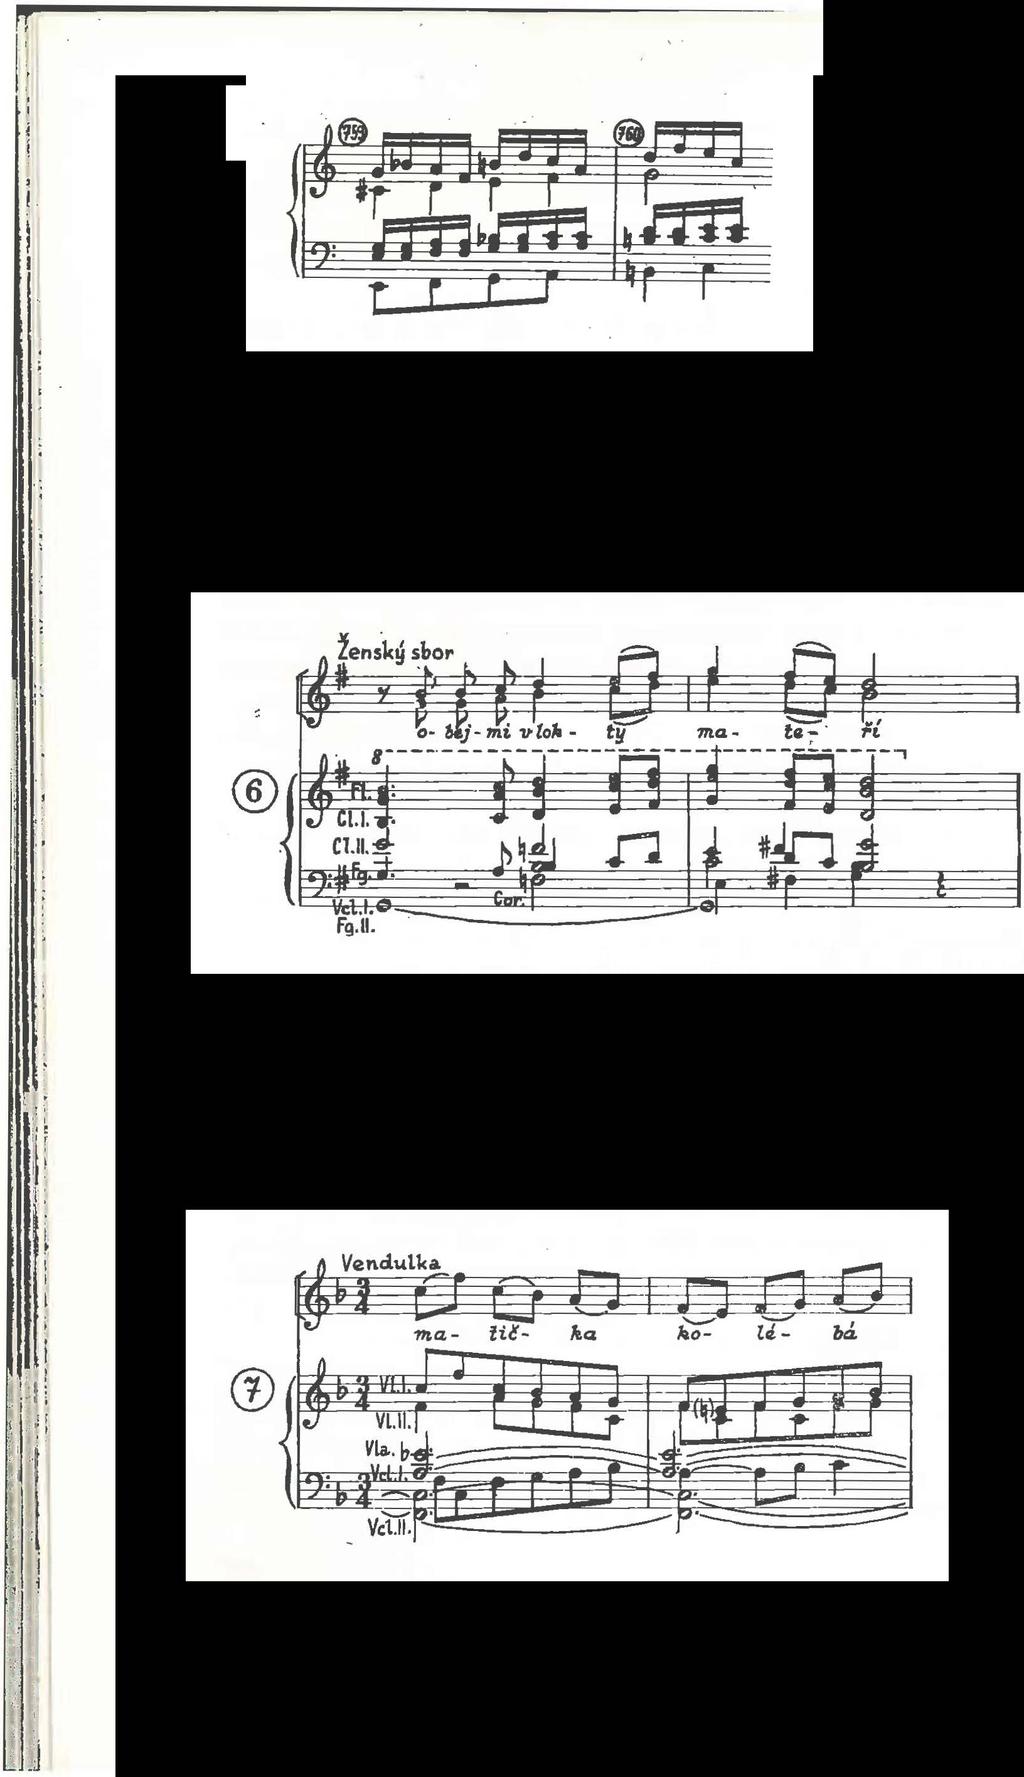 .J l ' Že tento postup i když jistě vzácný neměl ve vyhraněně tonální hudbě minulosti nějak zanedbatelnou frekvenci, dokládají další dva.... příklady z oper Bedřicha Smetany. V taktech 323324.